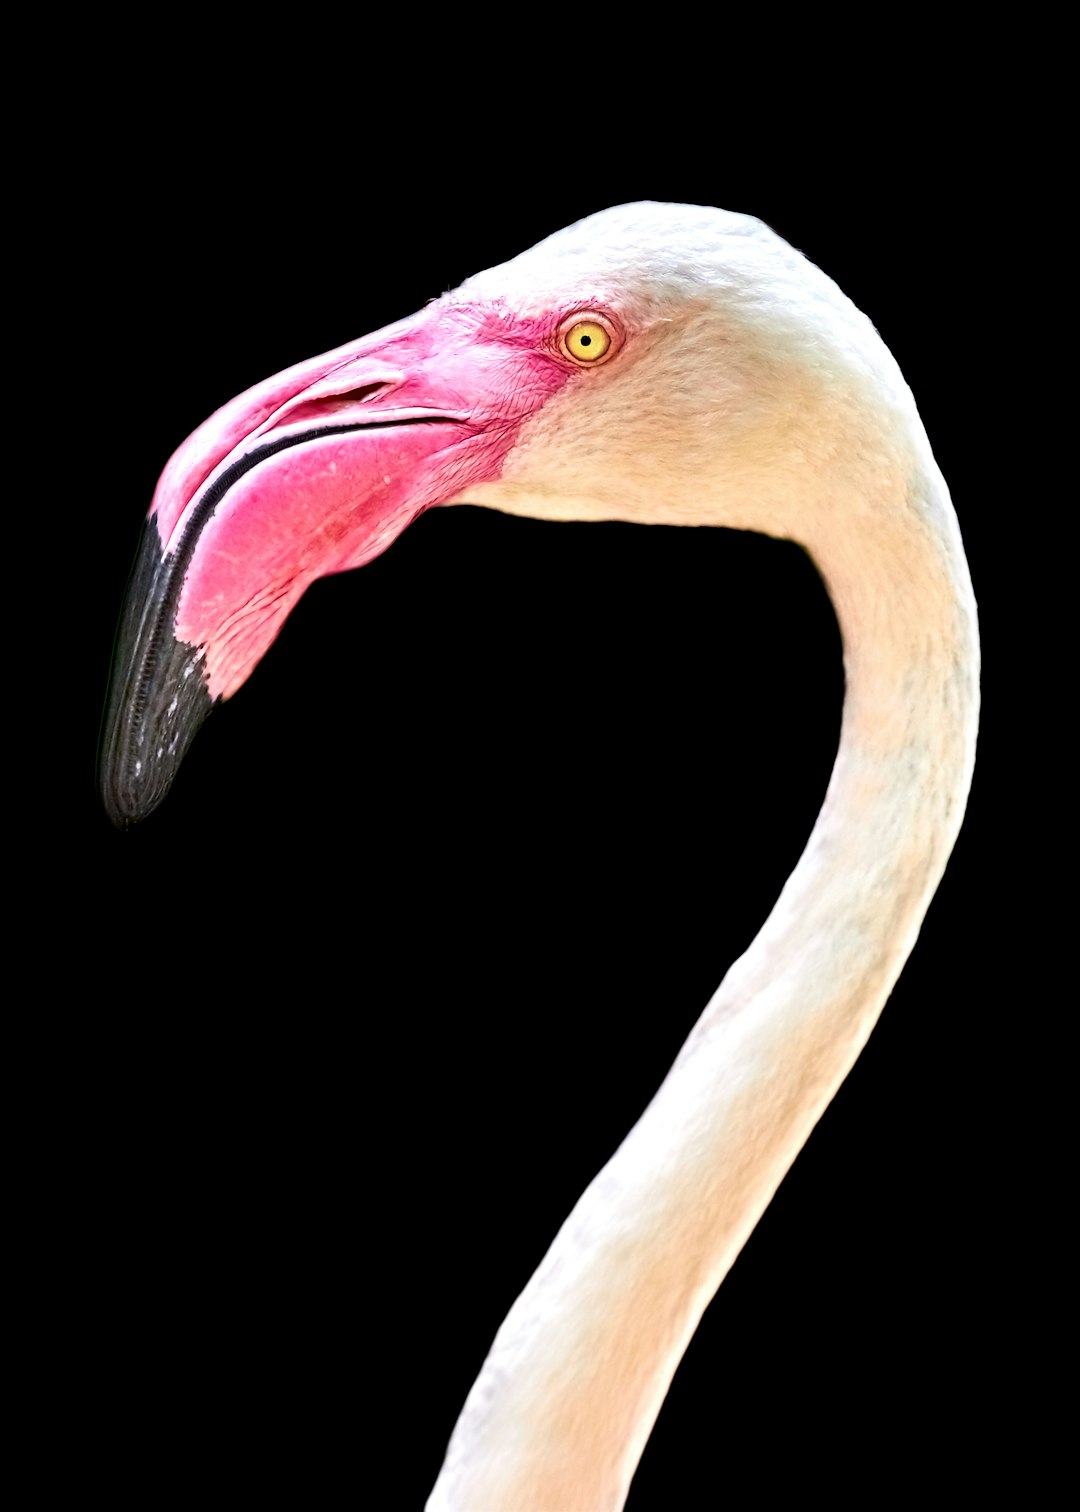  white flamingo head photo flamingo